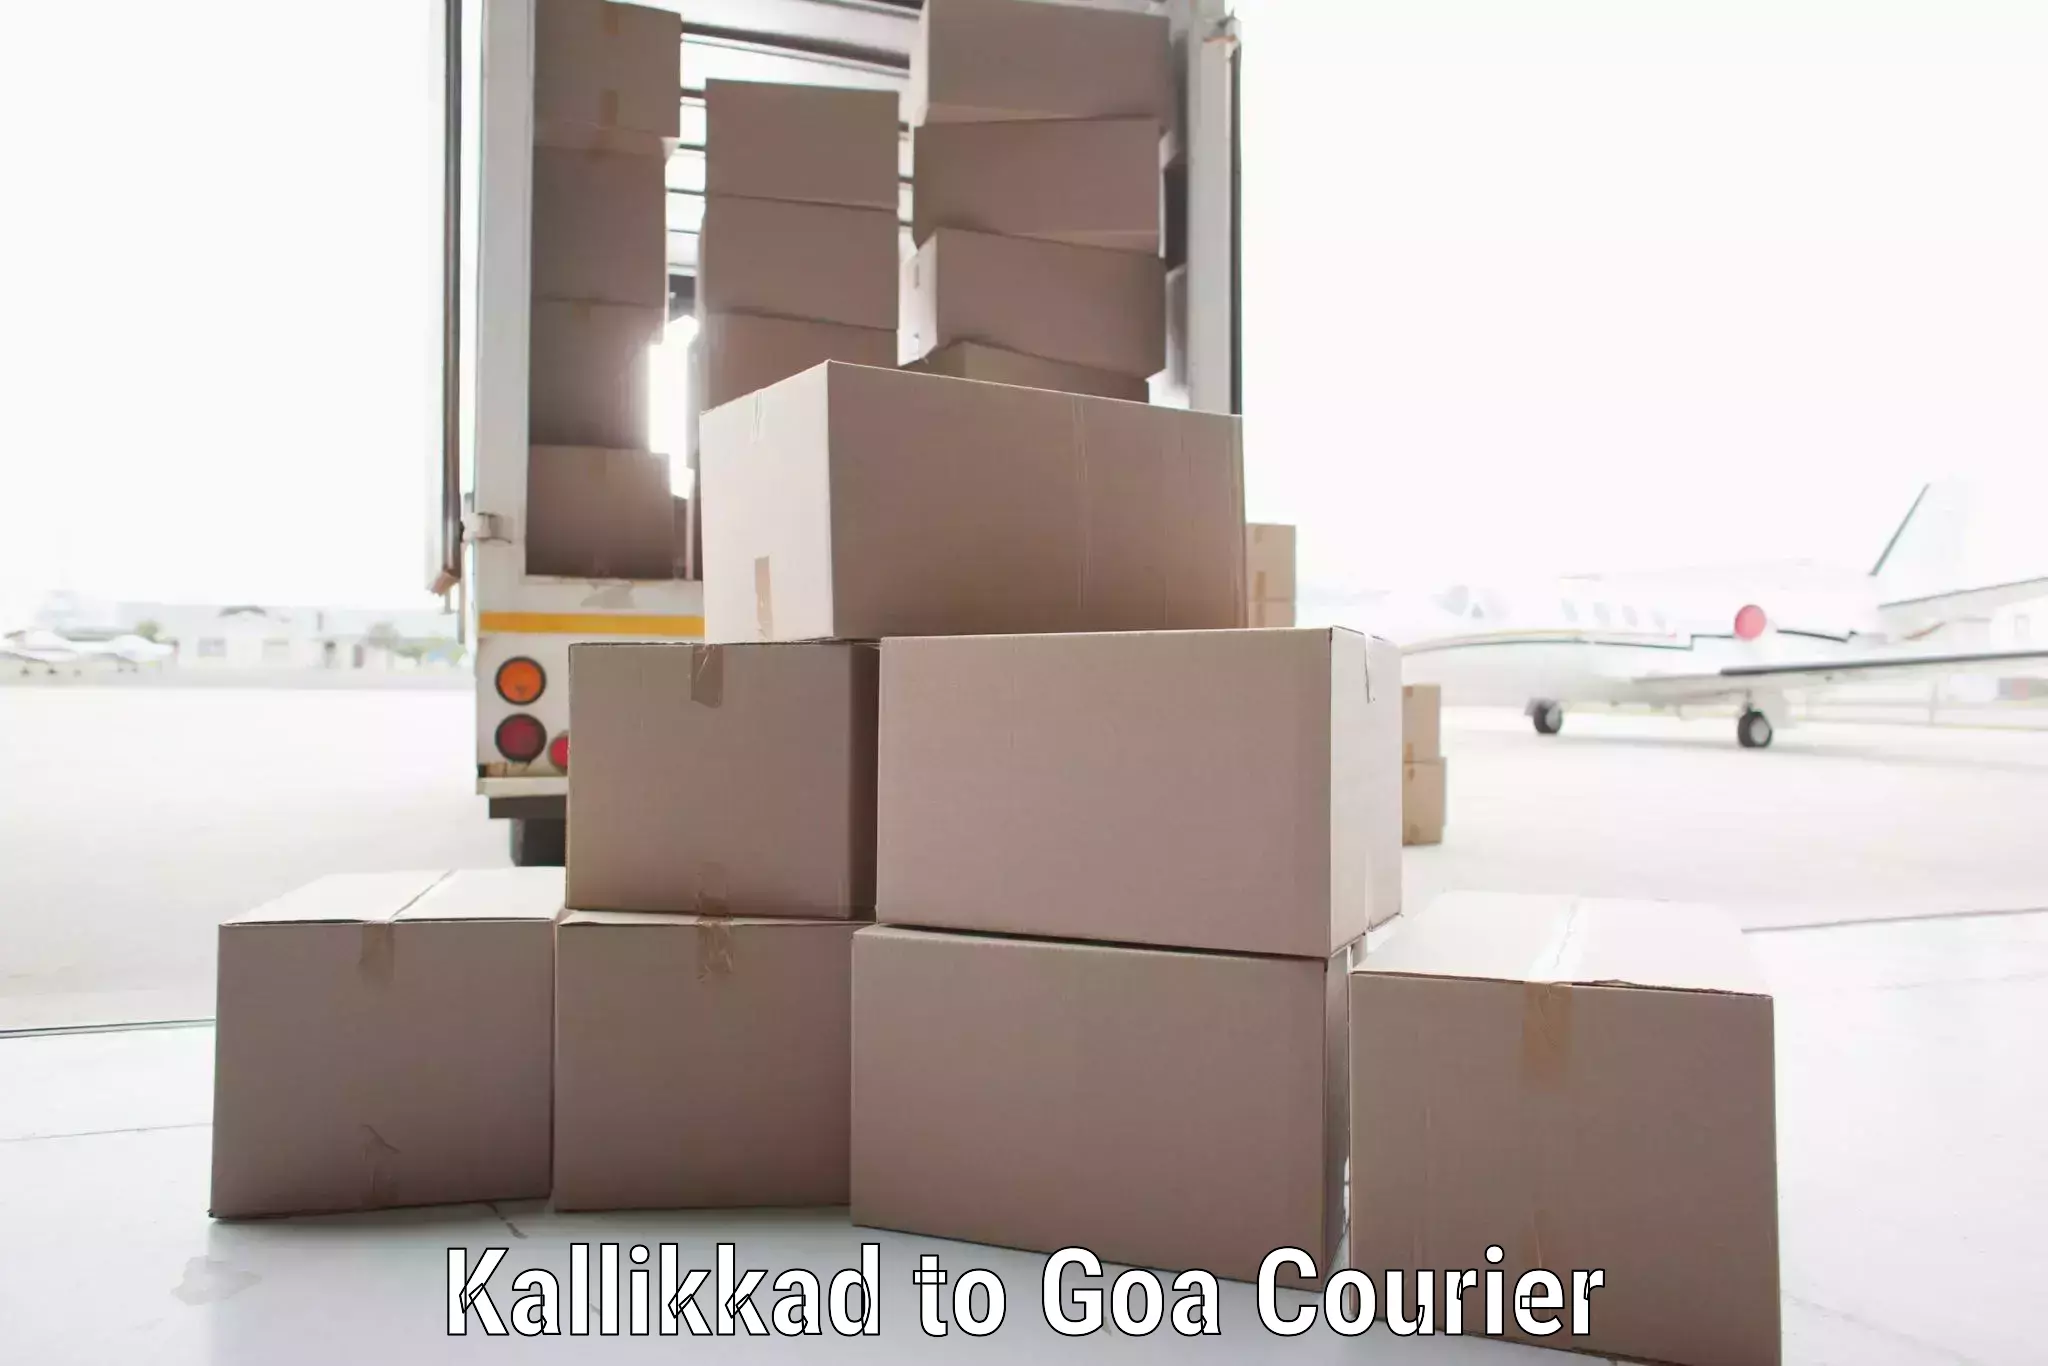 Subscription-based courier Kallikkad to Vasco da Gama